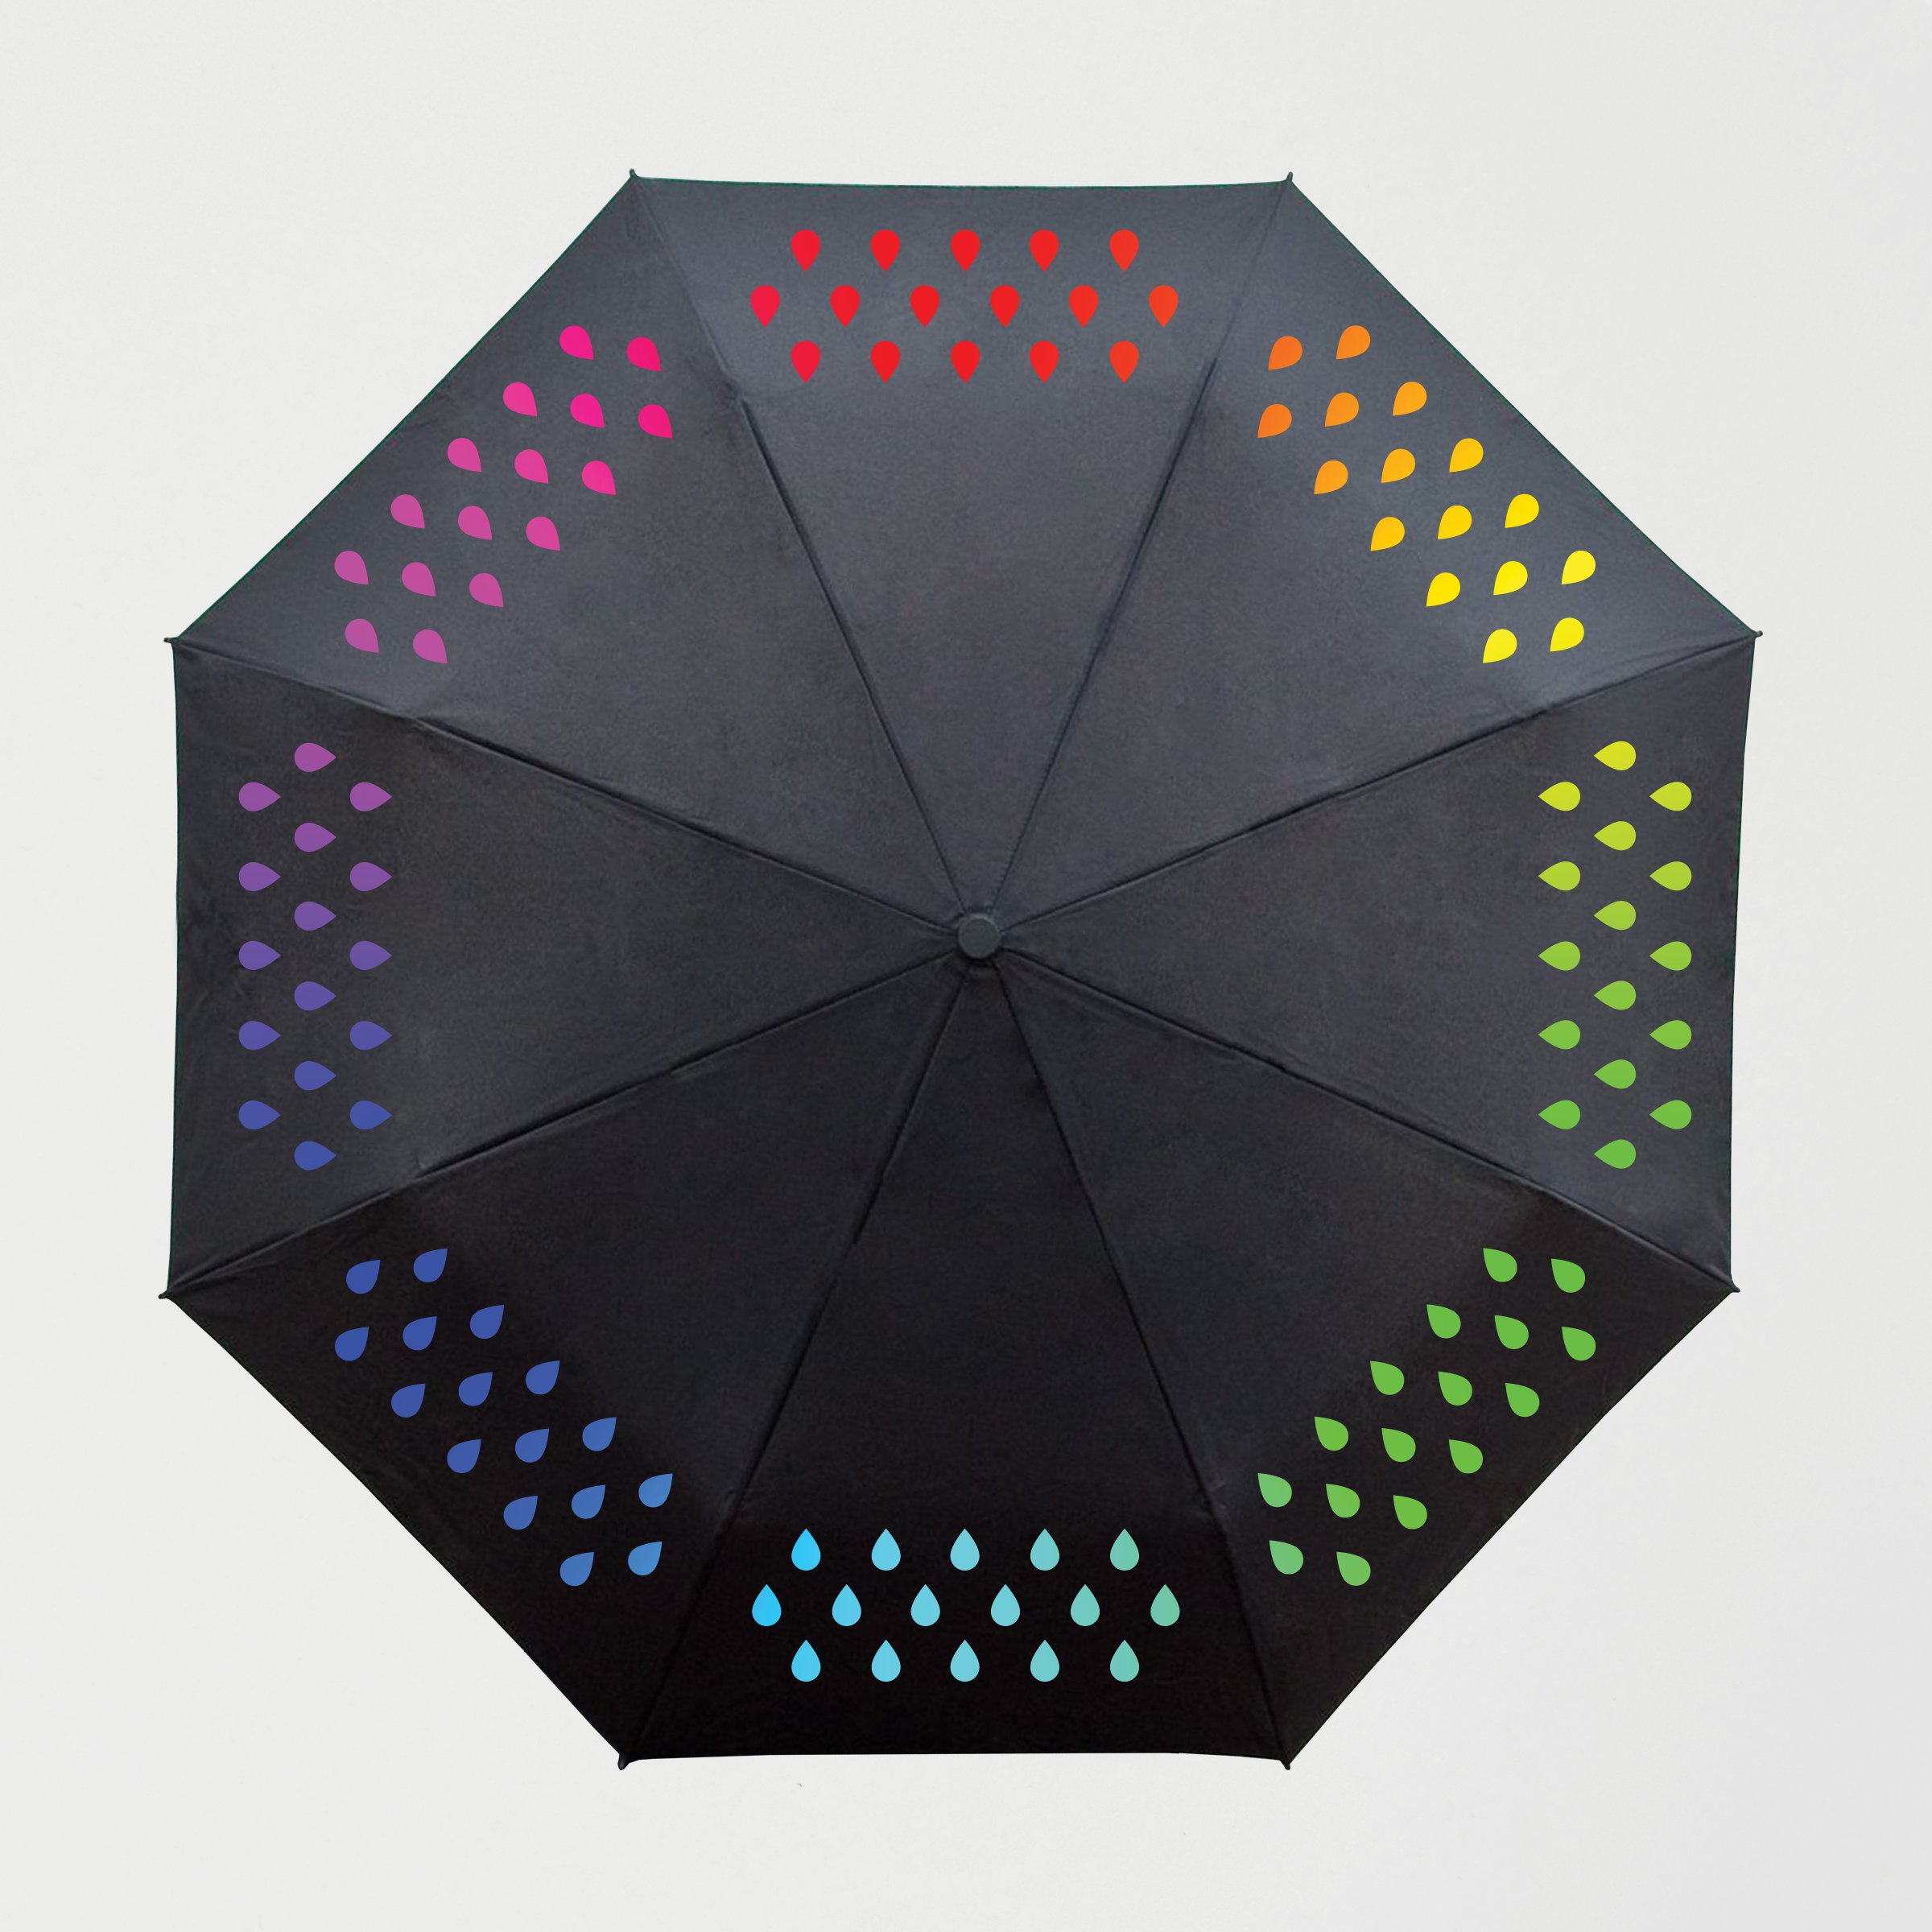 Umbrella changes colour when wet